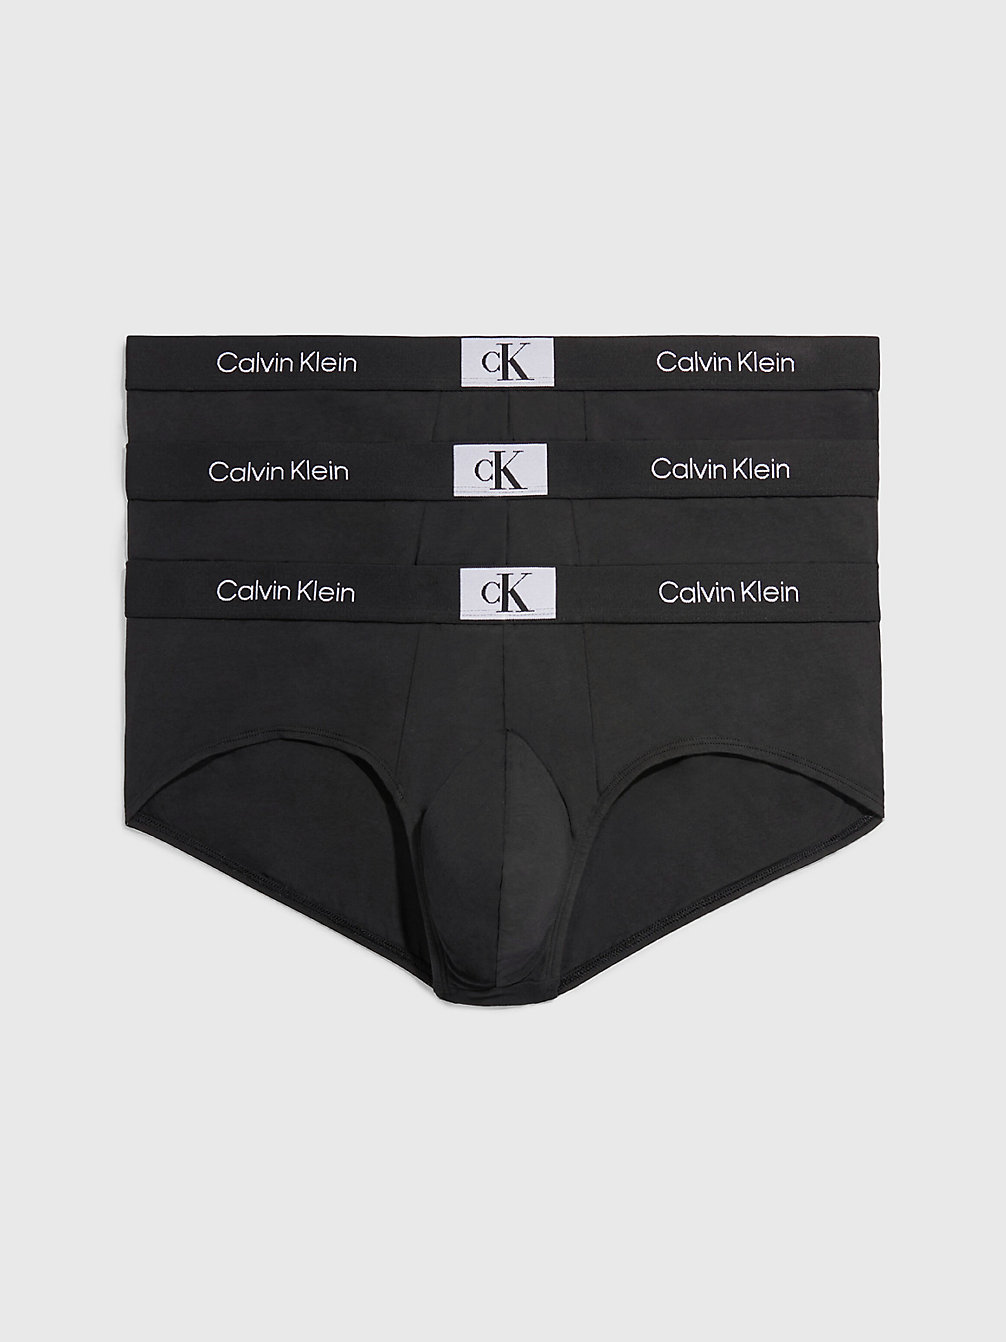 BLACK/ BLACK/ BLACK > Zestaw 3 Par Slipów Plus Size - Ck96 > undefined Mężczyźni - Calvin Klein